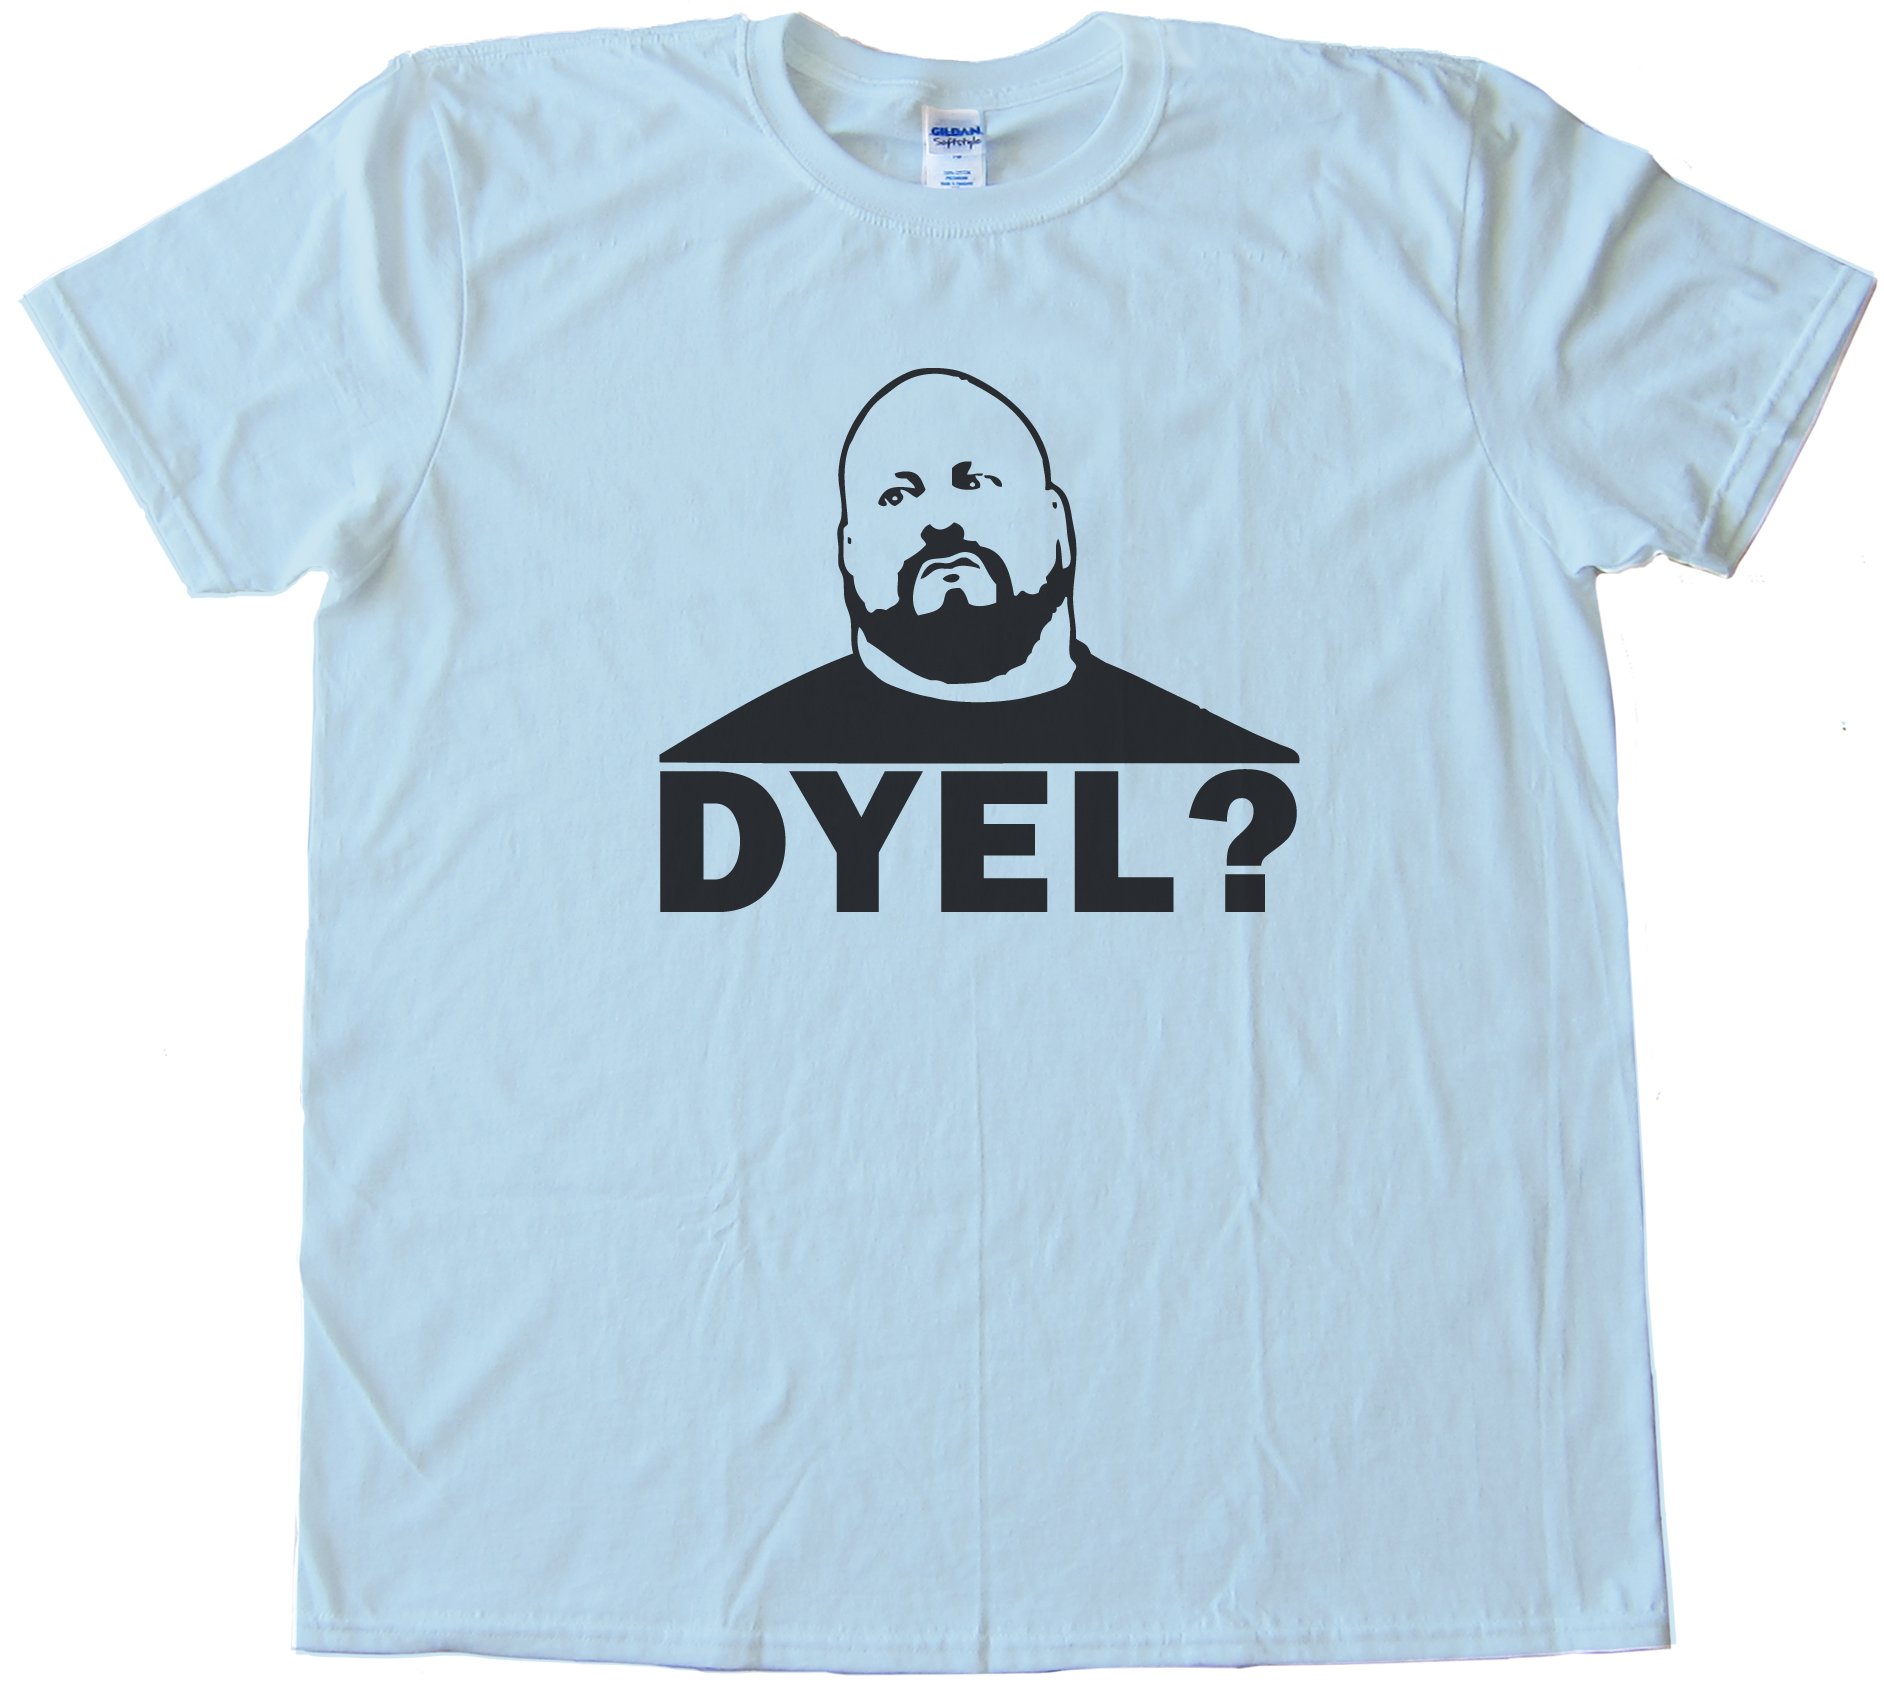 Dyel - Do You Even Lift? Tee Shirt